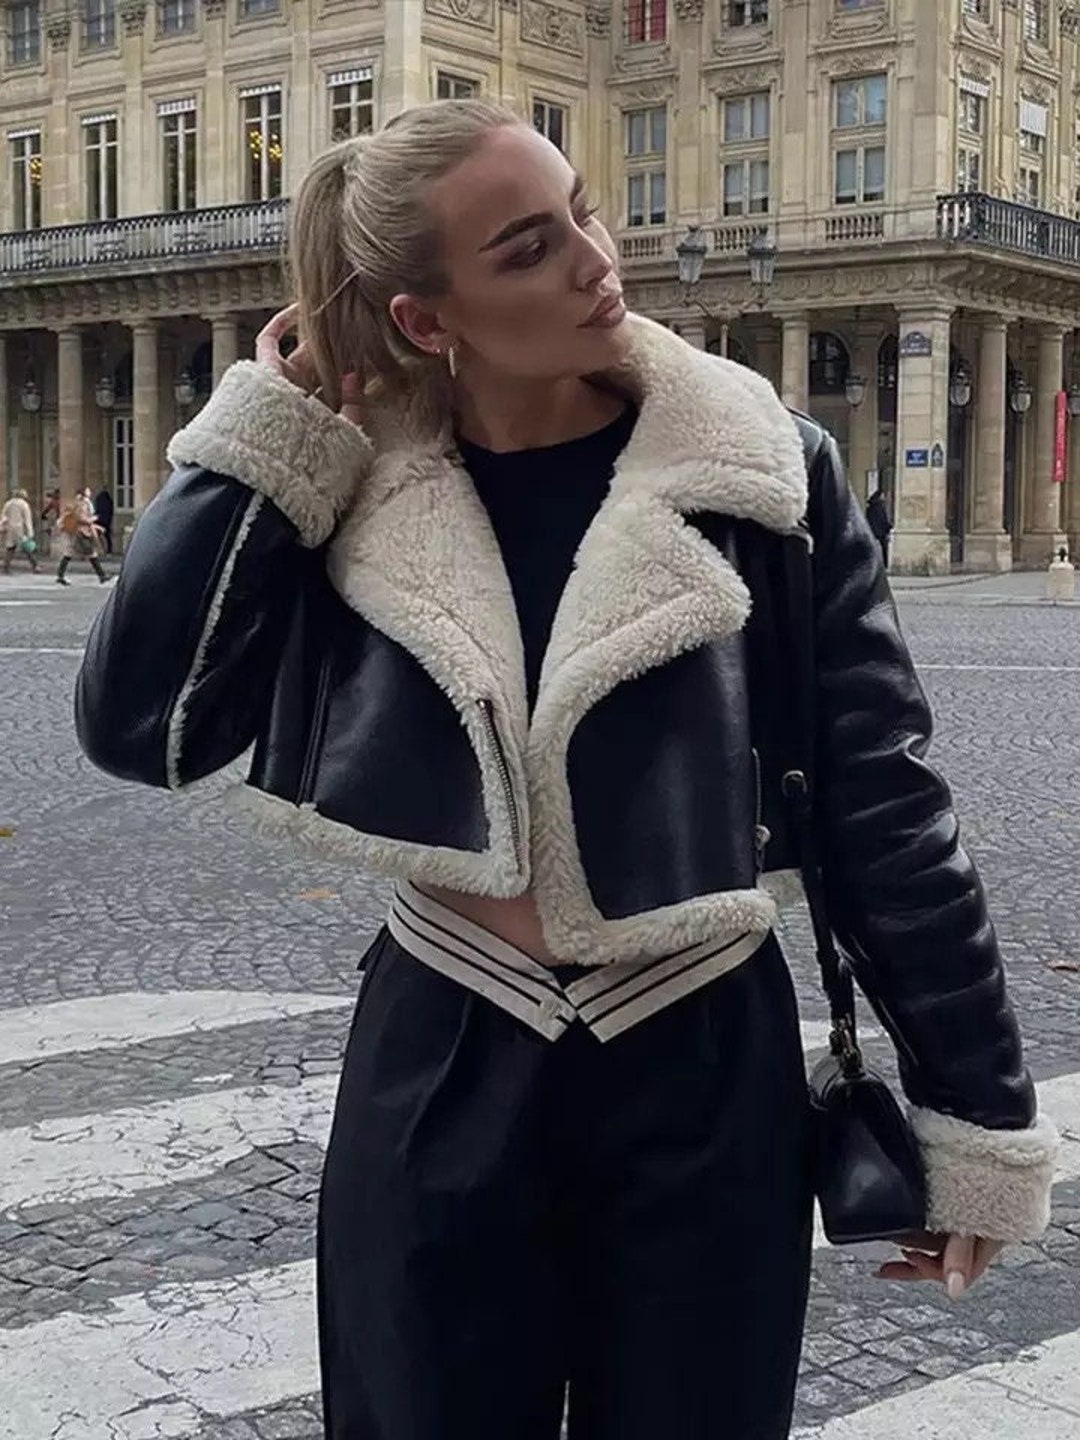 2022 Women Winter Faux Leather Jacket Long Sleeve Lapel Fleece